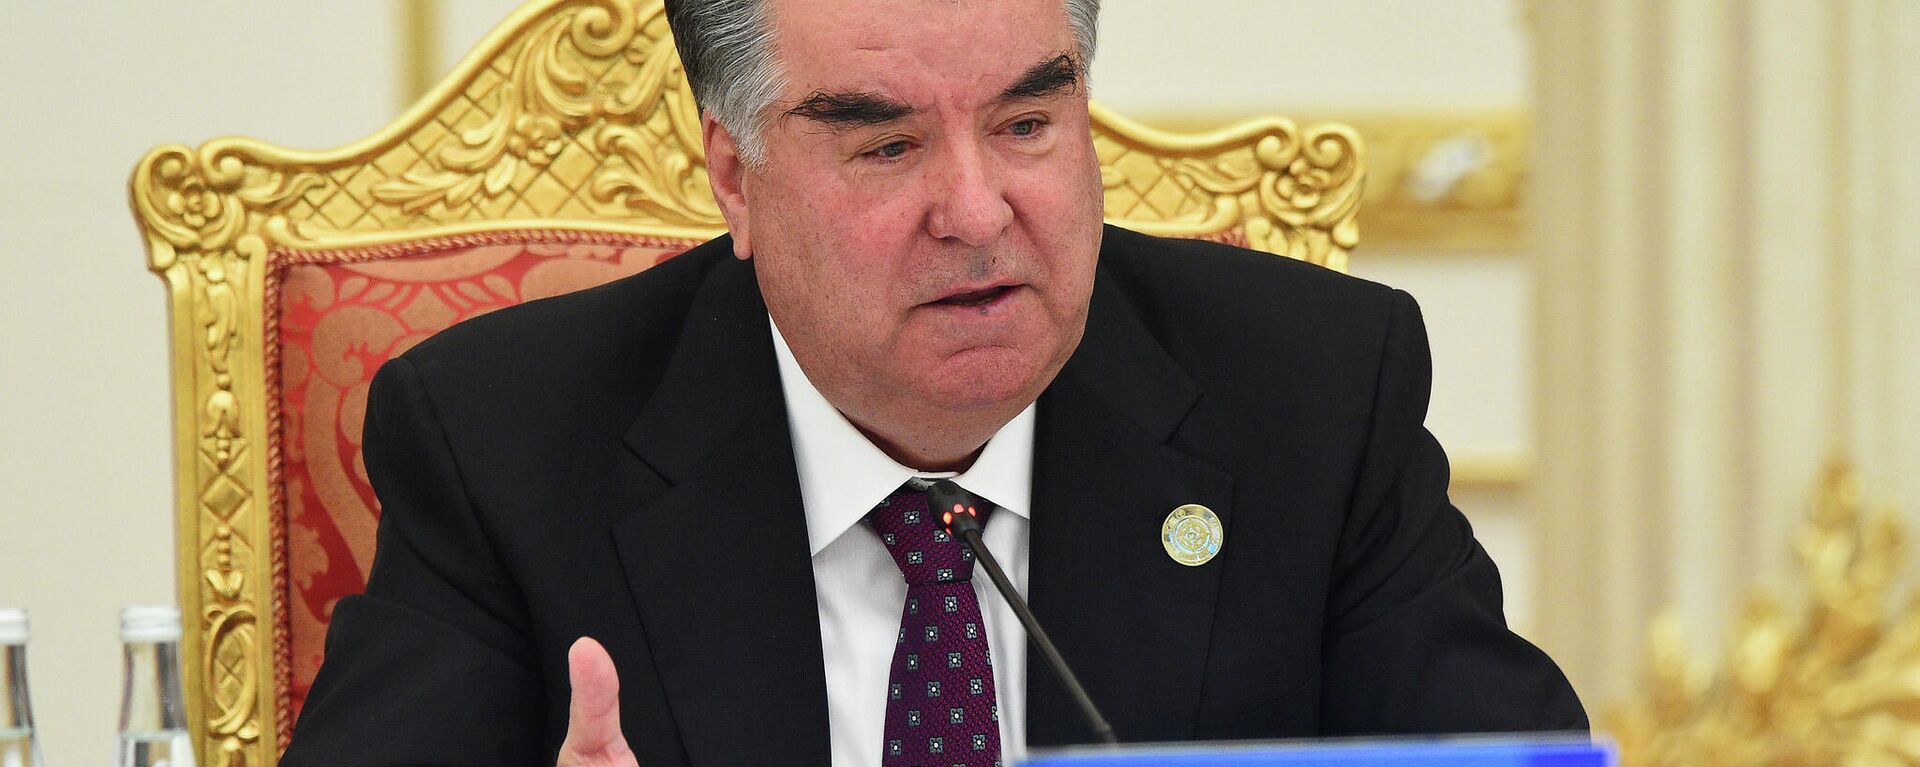 Президент Таджикистана Эмомали Рахмон - Sputnik Тоҷикистон, 1920, 15.10.2021